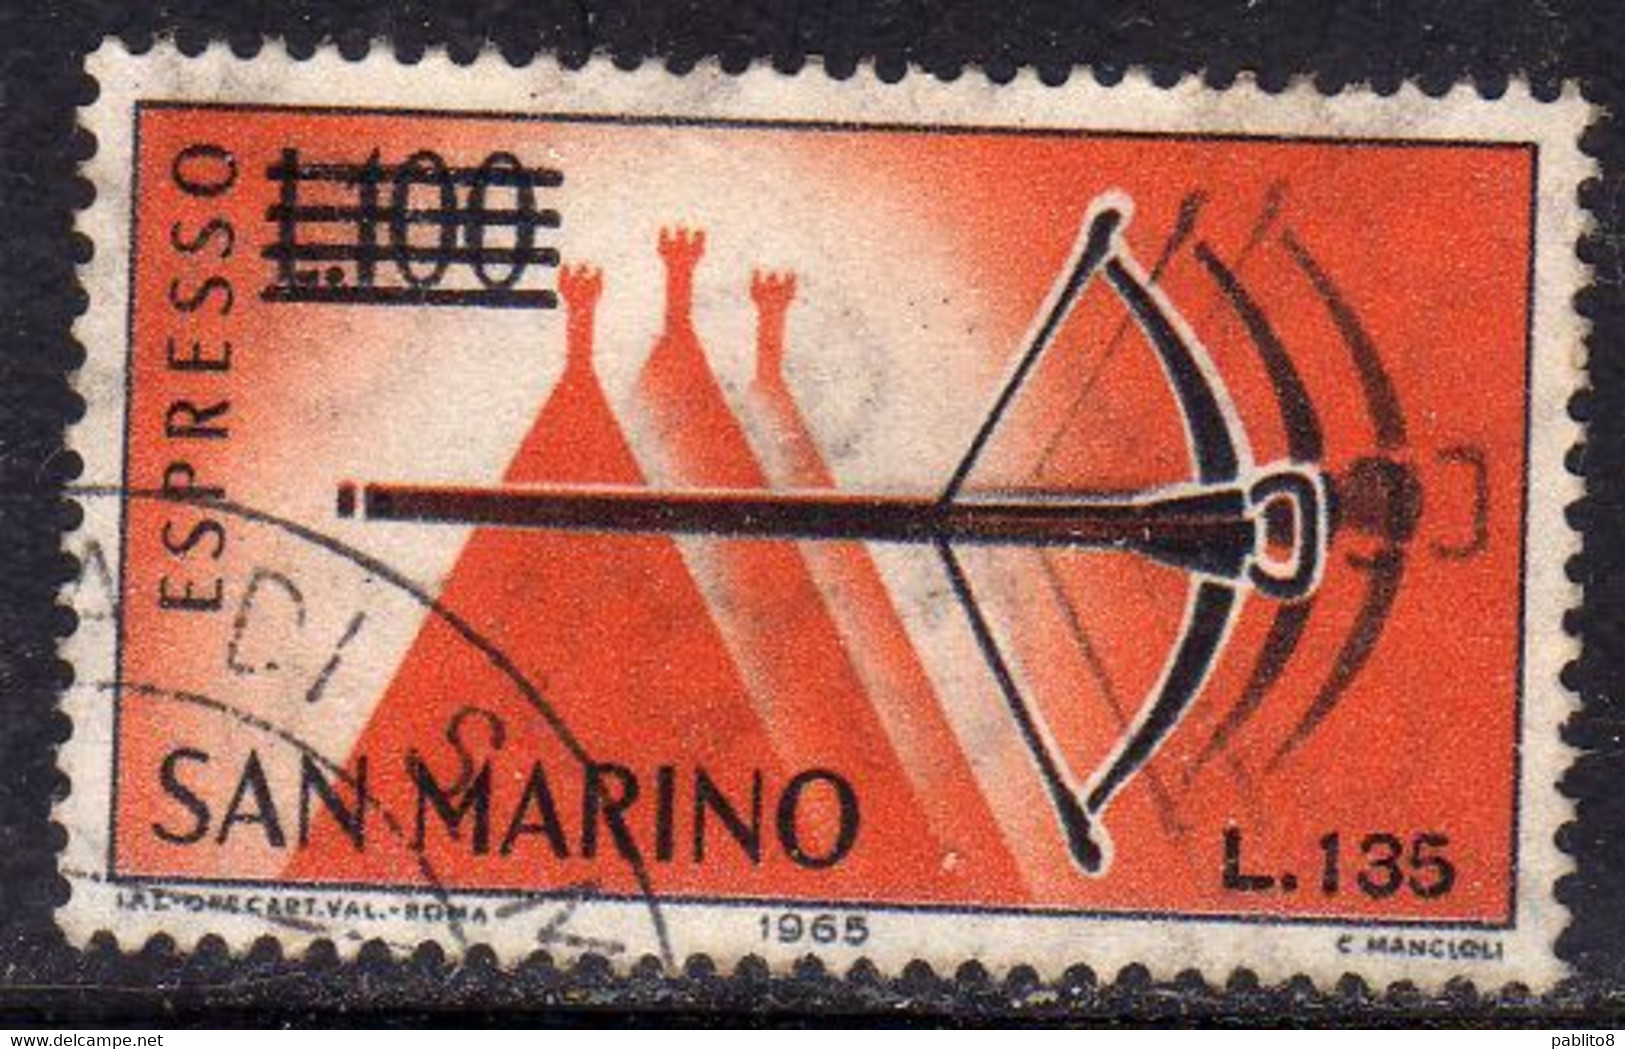 REPUBBLICA DI SAN MARINO 1965 ESPRESSI SPECIAL DELIVERY BALESTRA SOPRASTAMPATO SURCHARGED LIRE 135 SU 100 USATO USED - Express Letter Stamps